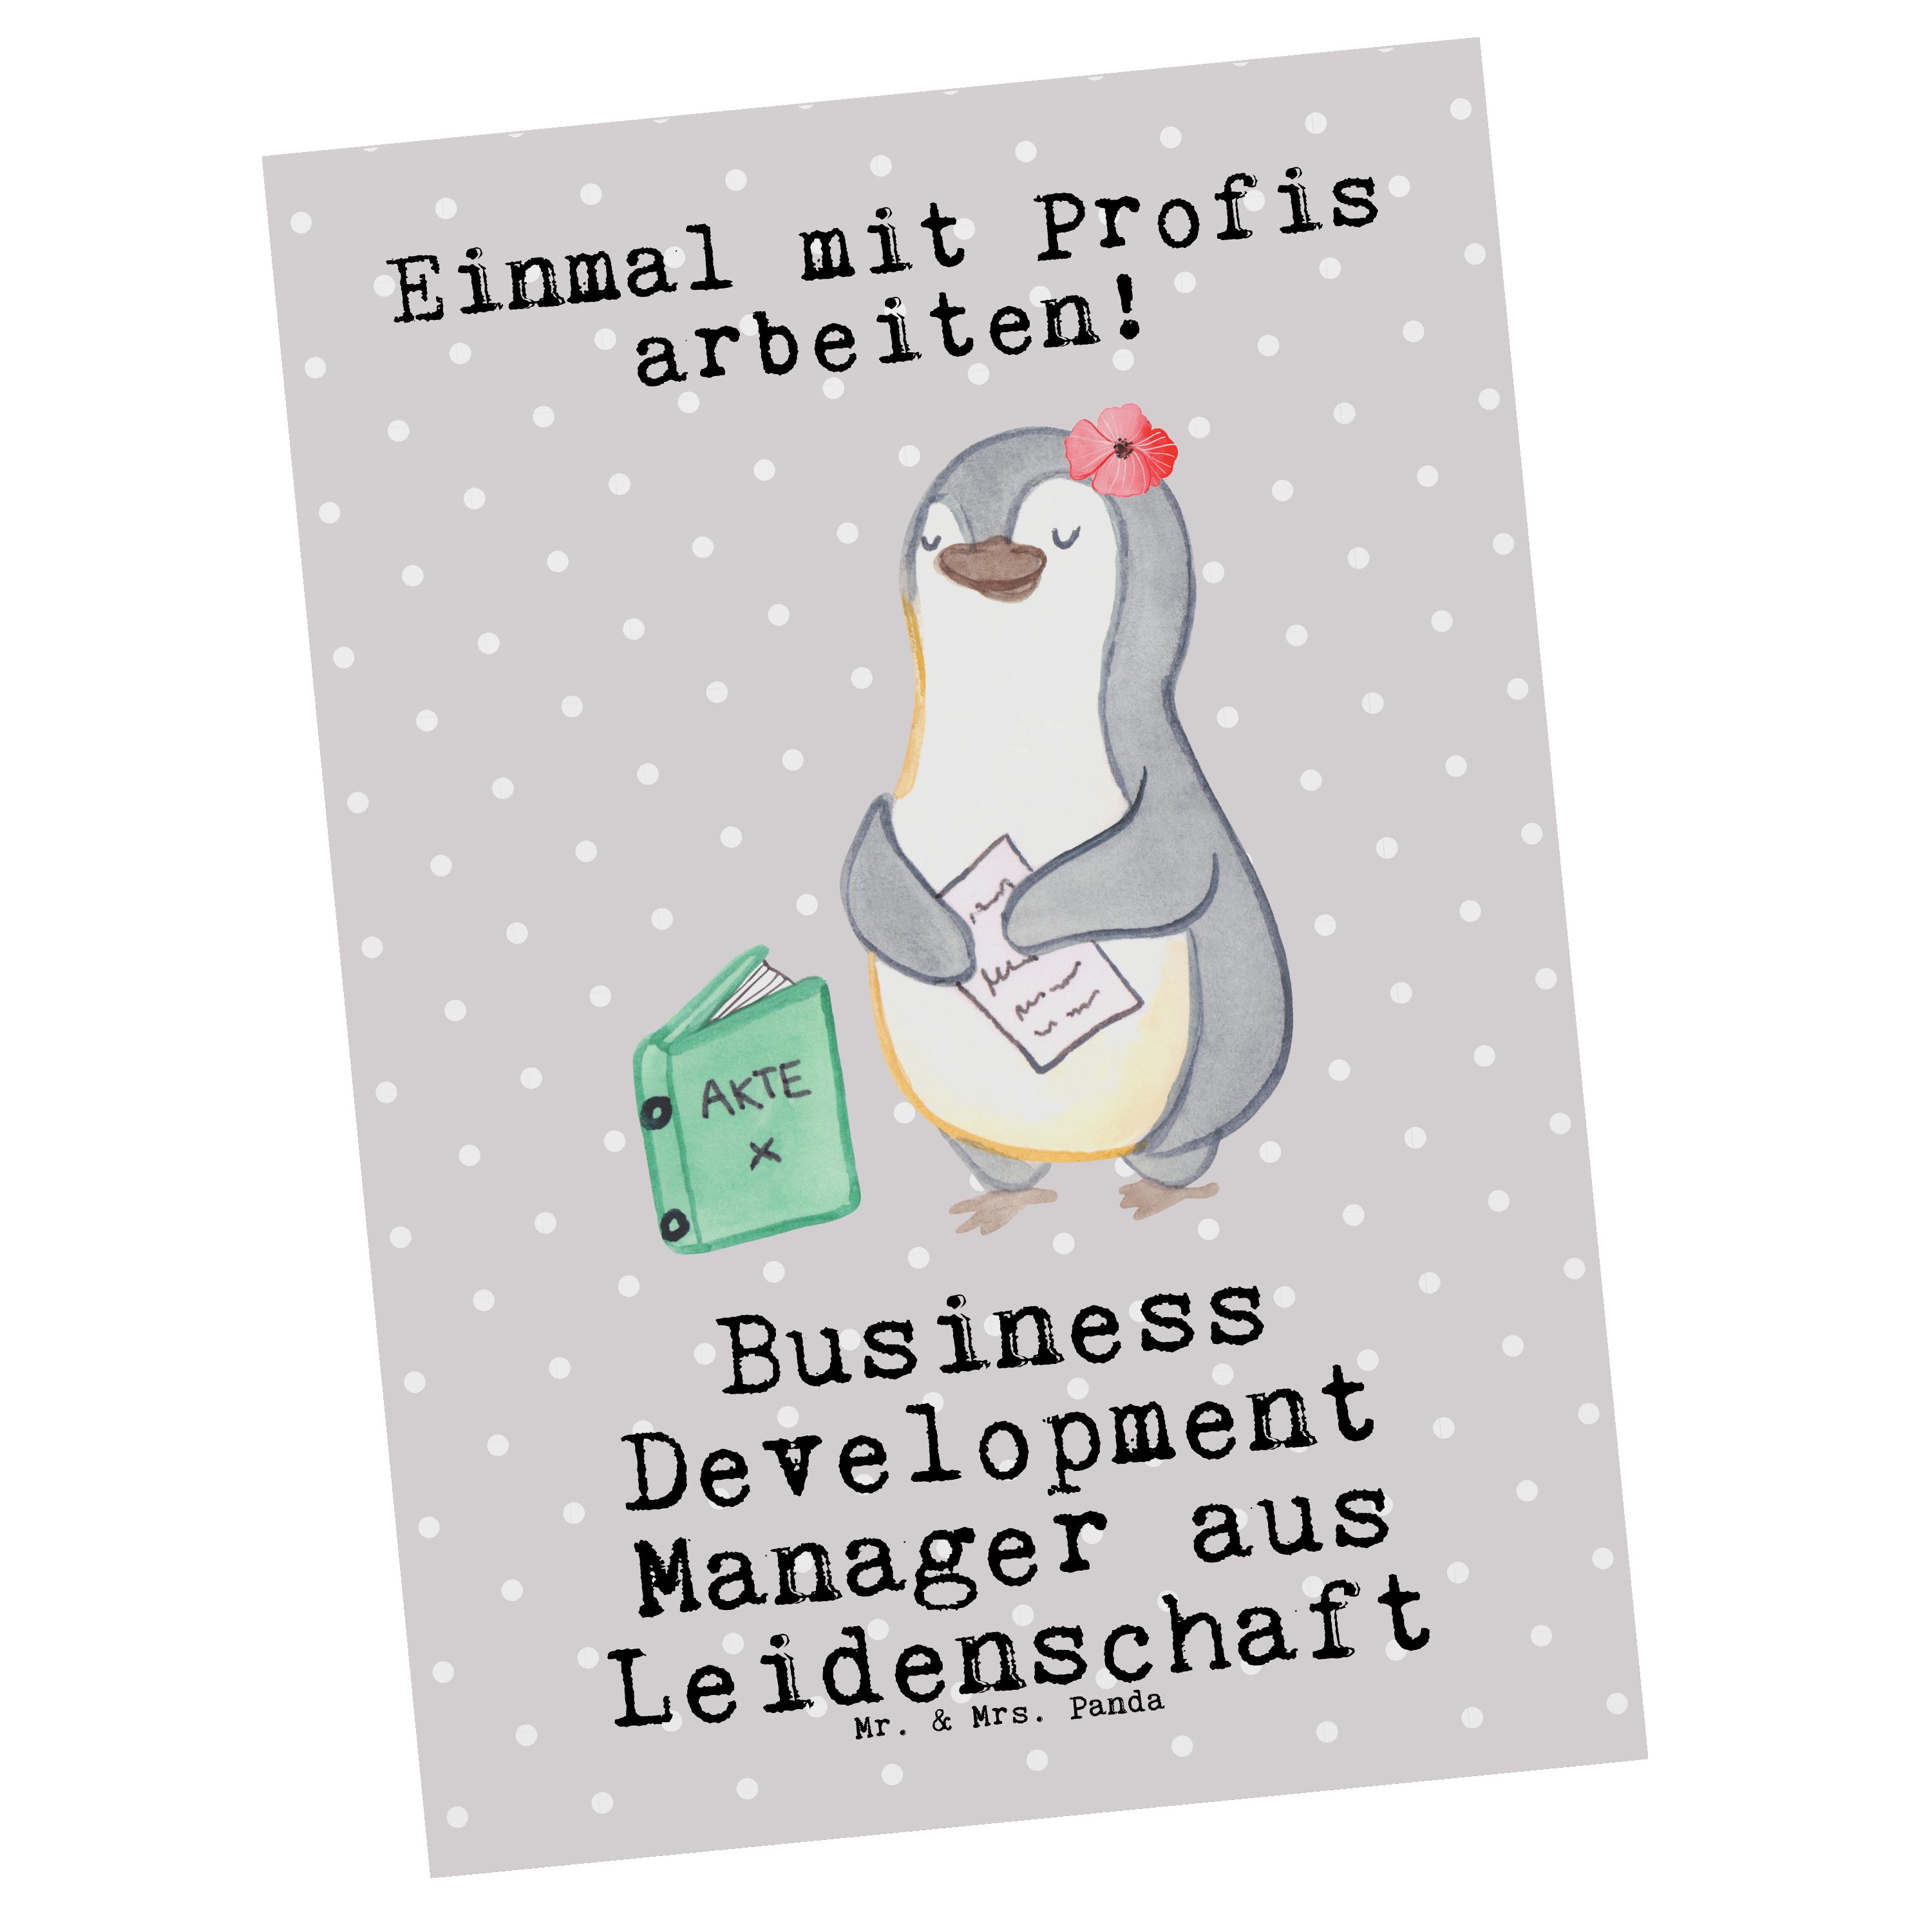 Mr. & - - Business Mrs. Panda Gesche Manager Development Pastell Grau aus Postkarte Leidenschaft